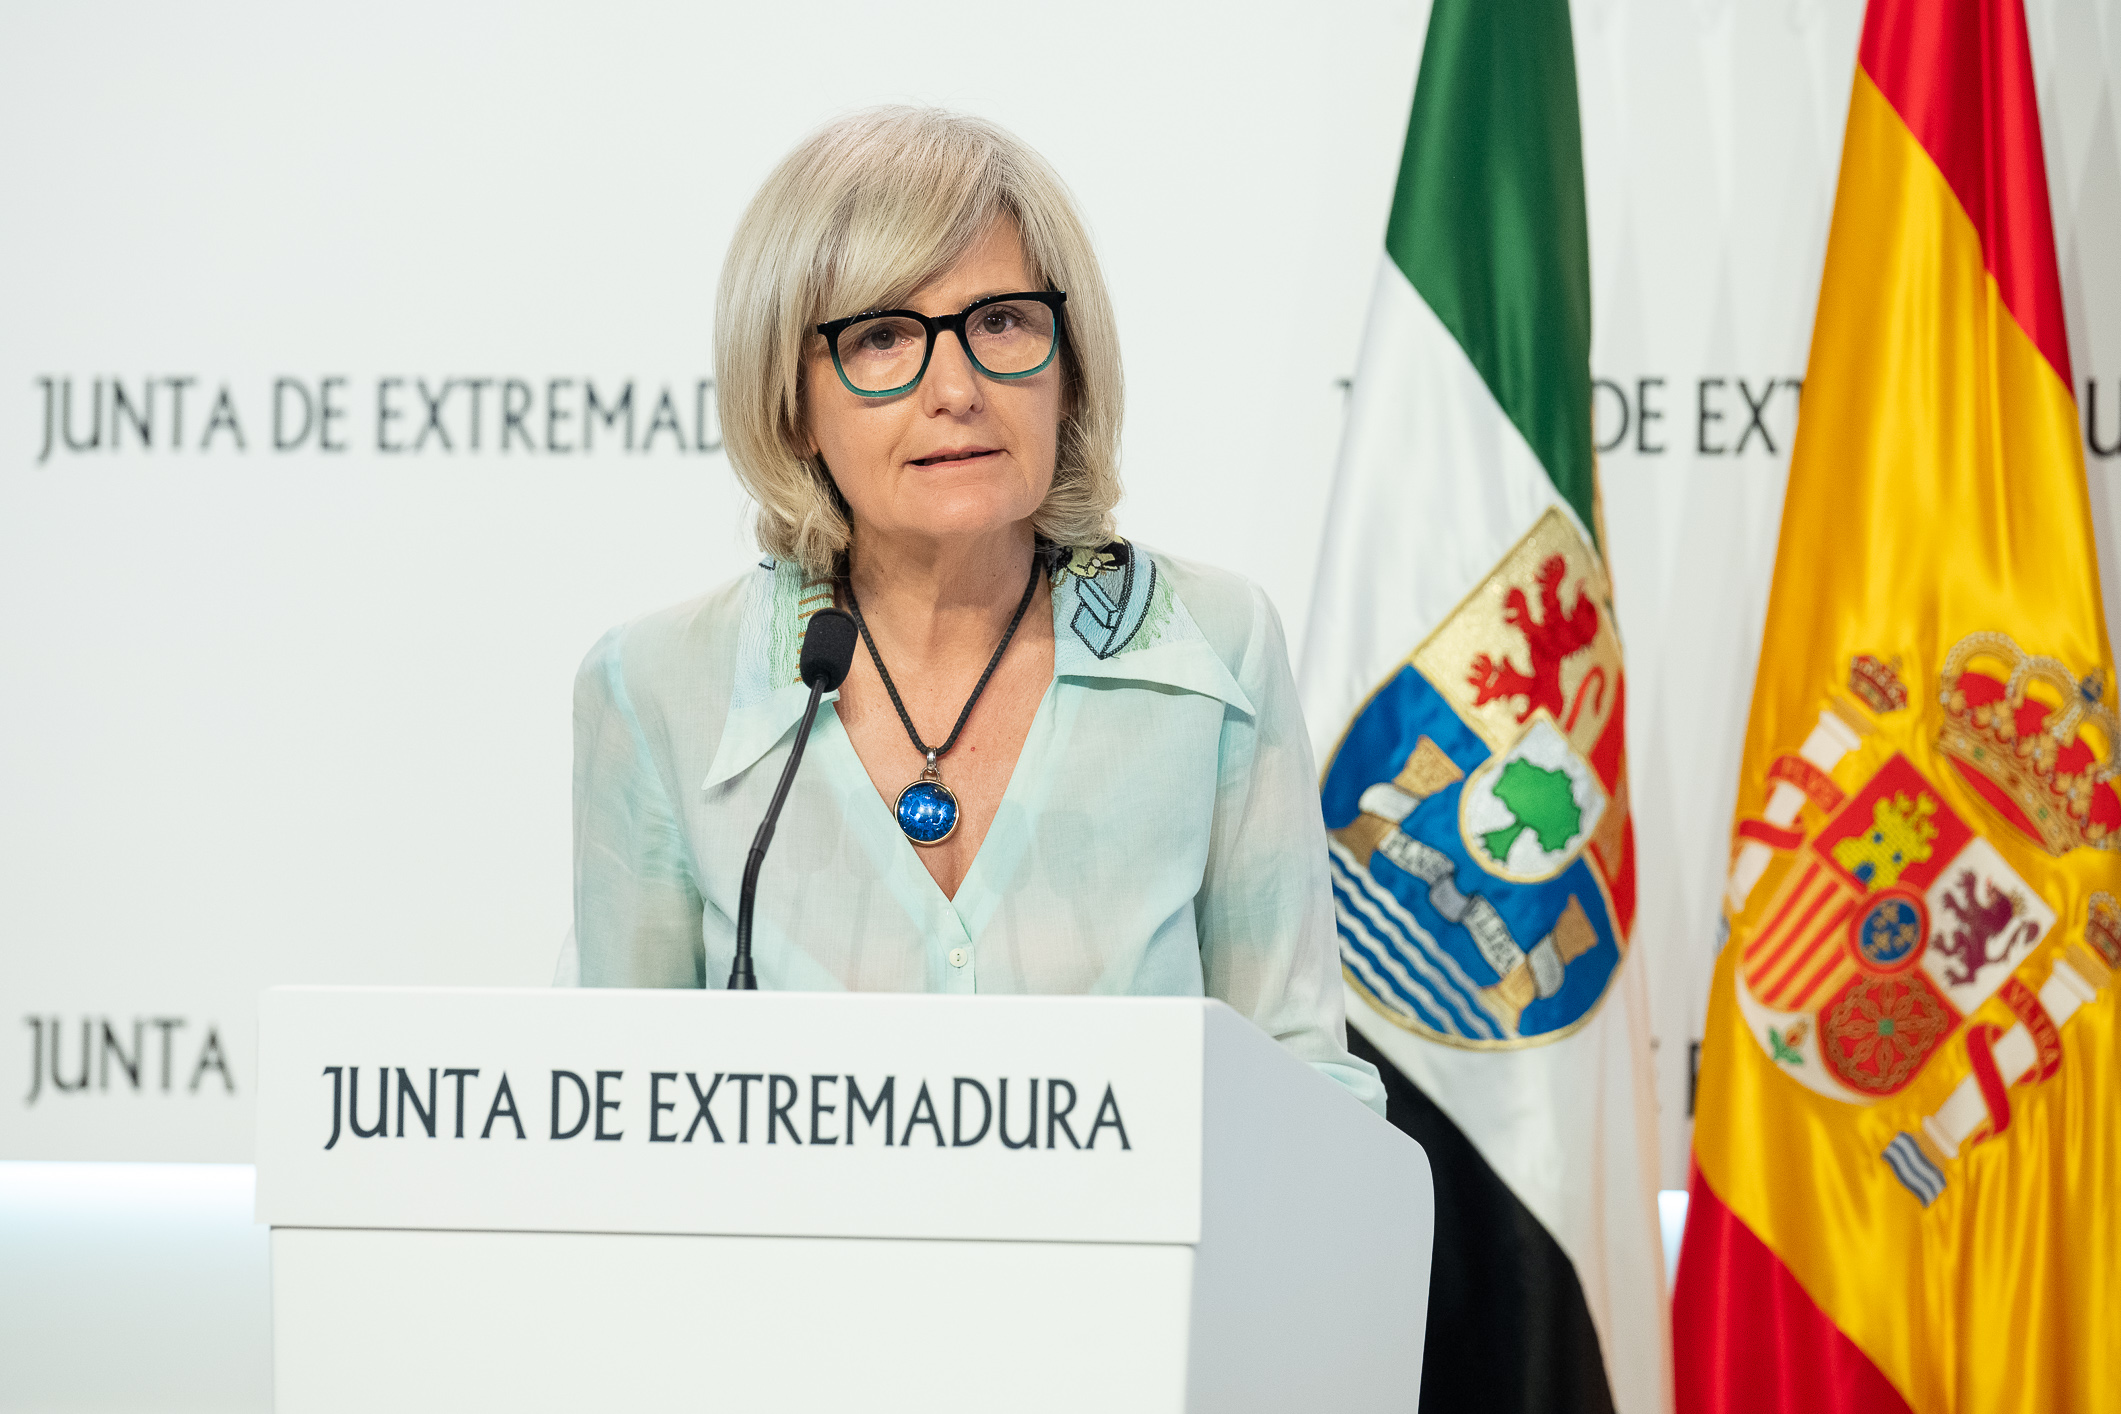 Image 8 of article La Junta de Extremadura aprueba una ayuda de 2.000 euros anuales para enfermos de ELA en la región